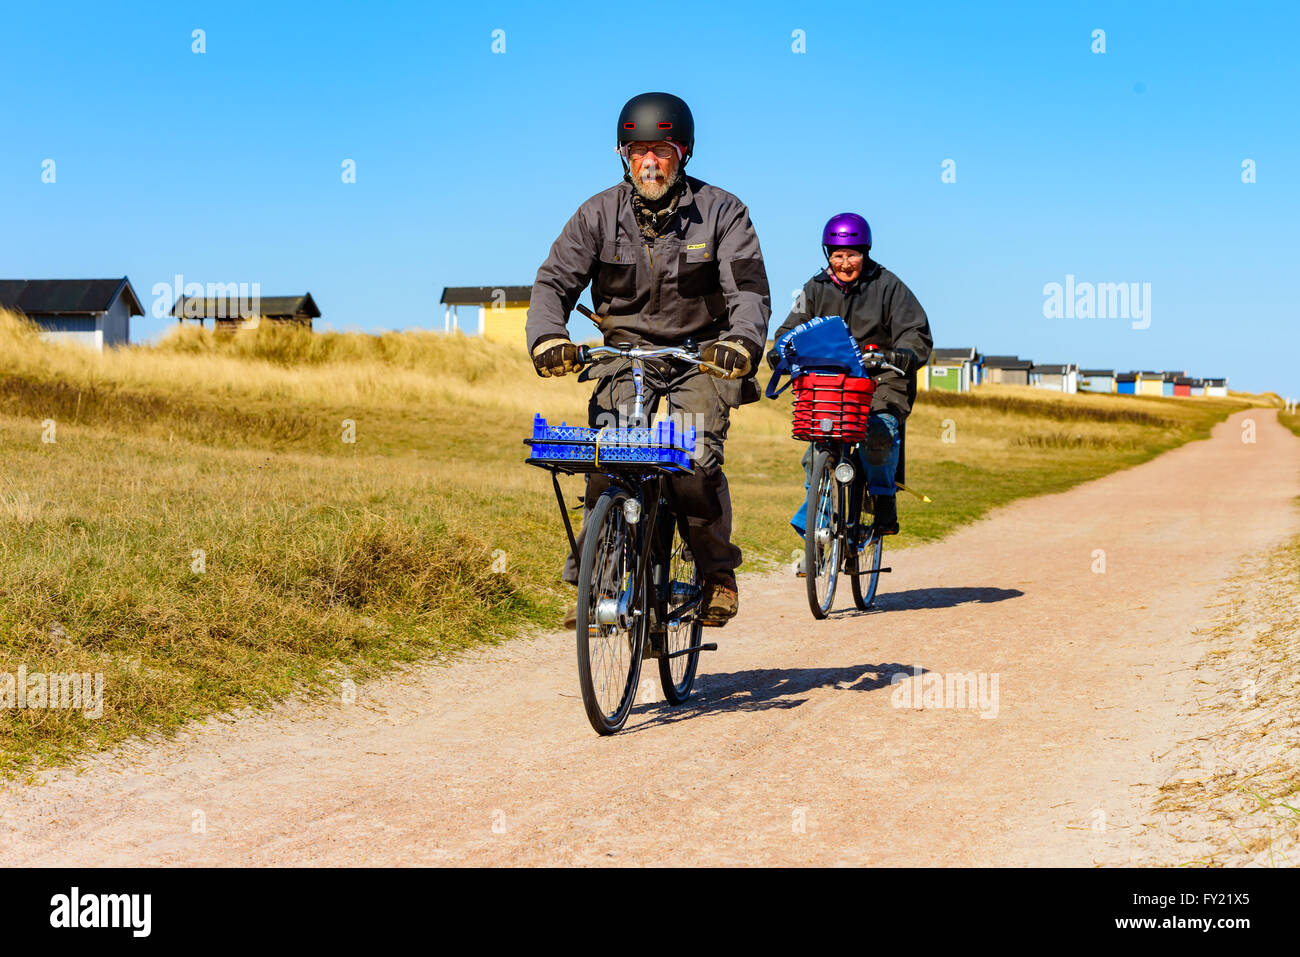 Skanor, Svezia - 11 Aprile 2016: una coppia senior è fuori di equitazione biciclette su strada presso la spiaggia lungo alcune cabine balneari. Entrambi abbiamo Foto Stock